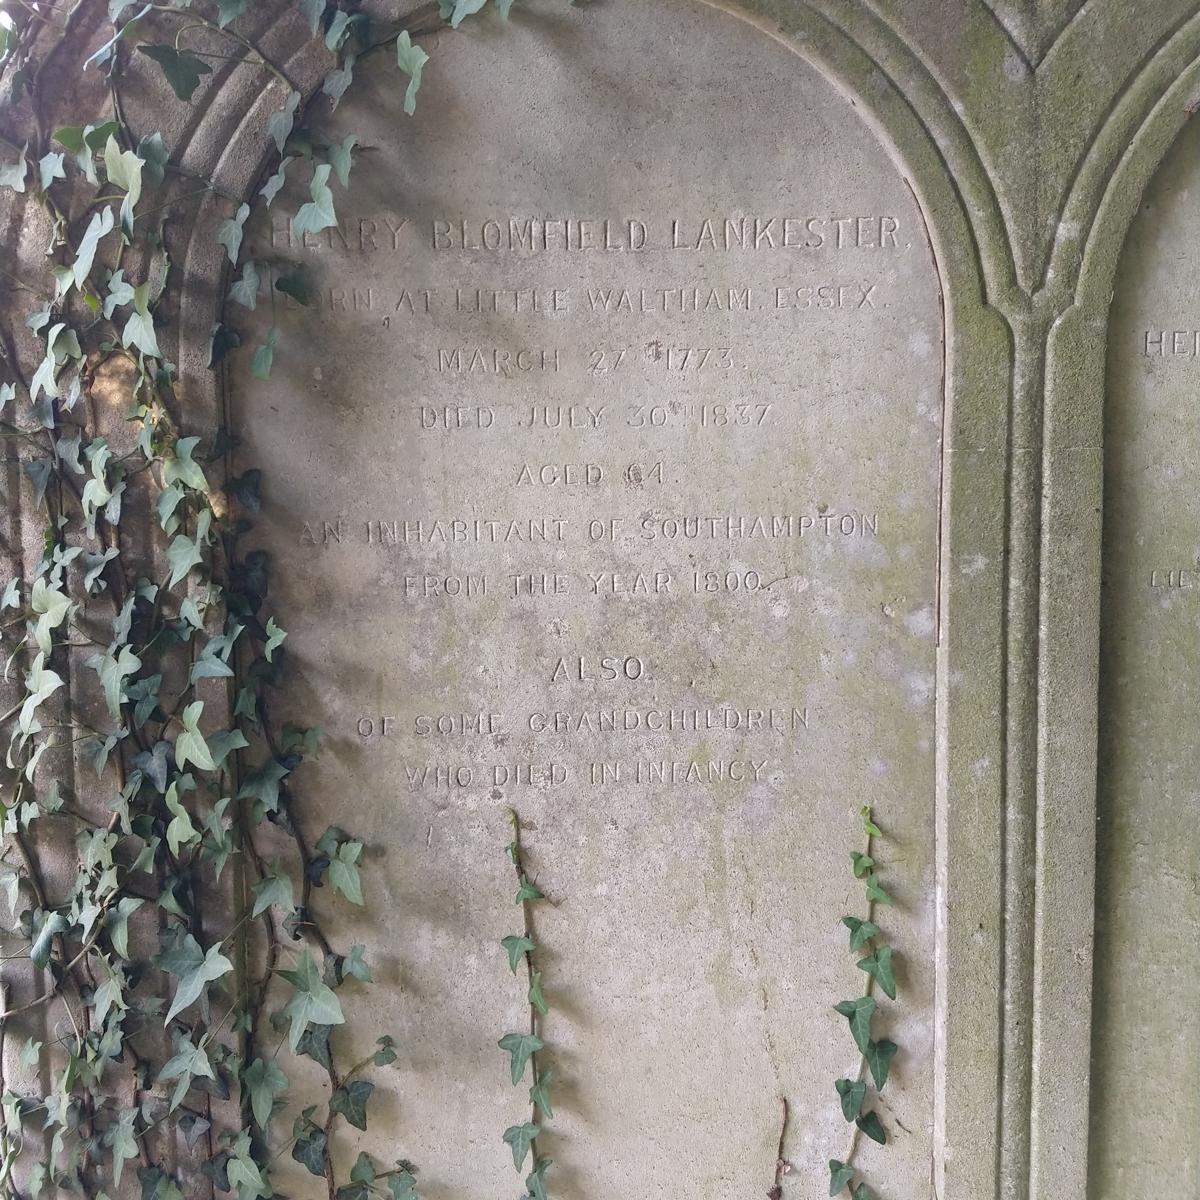 Grave of Henry Blomfield Lankester